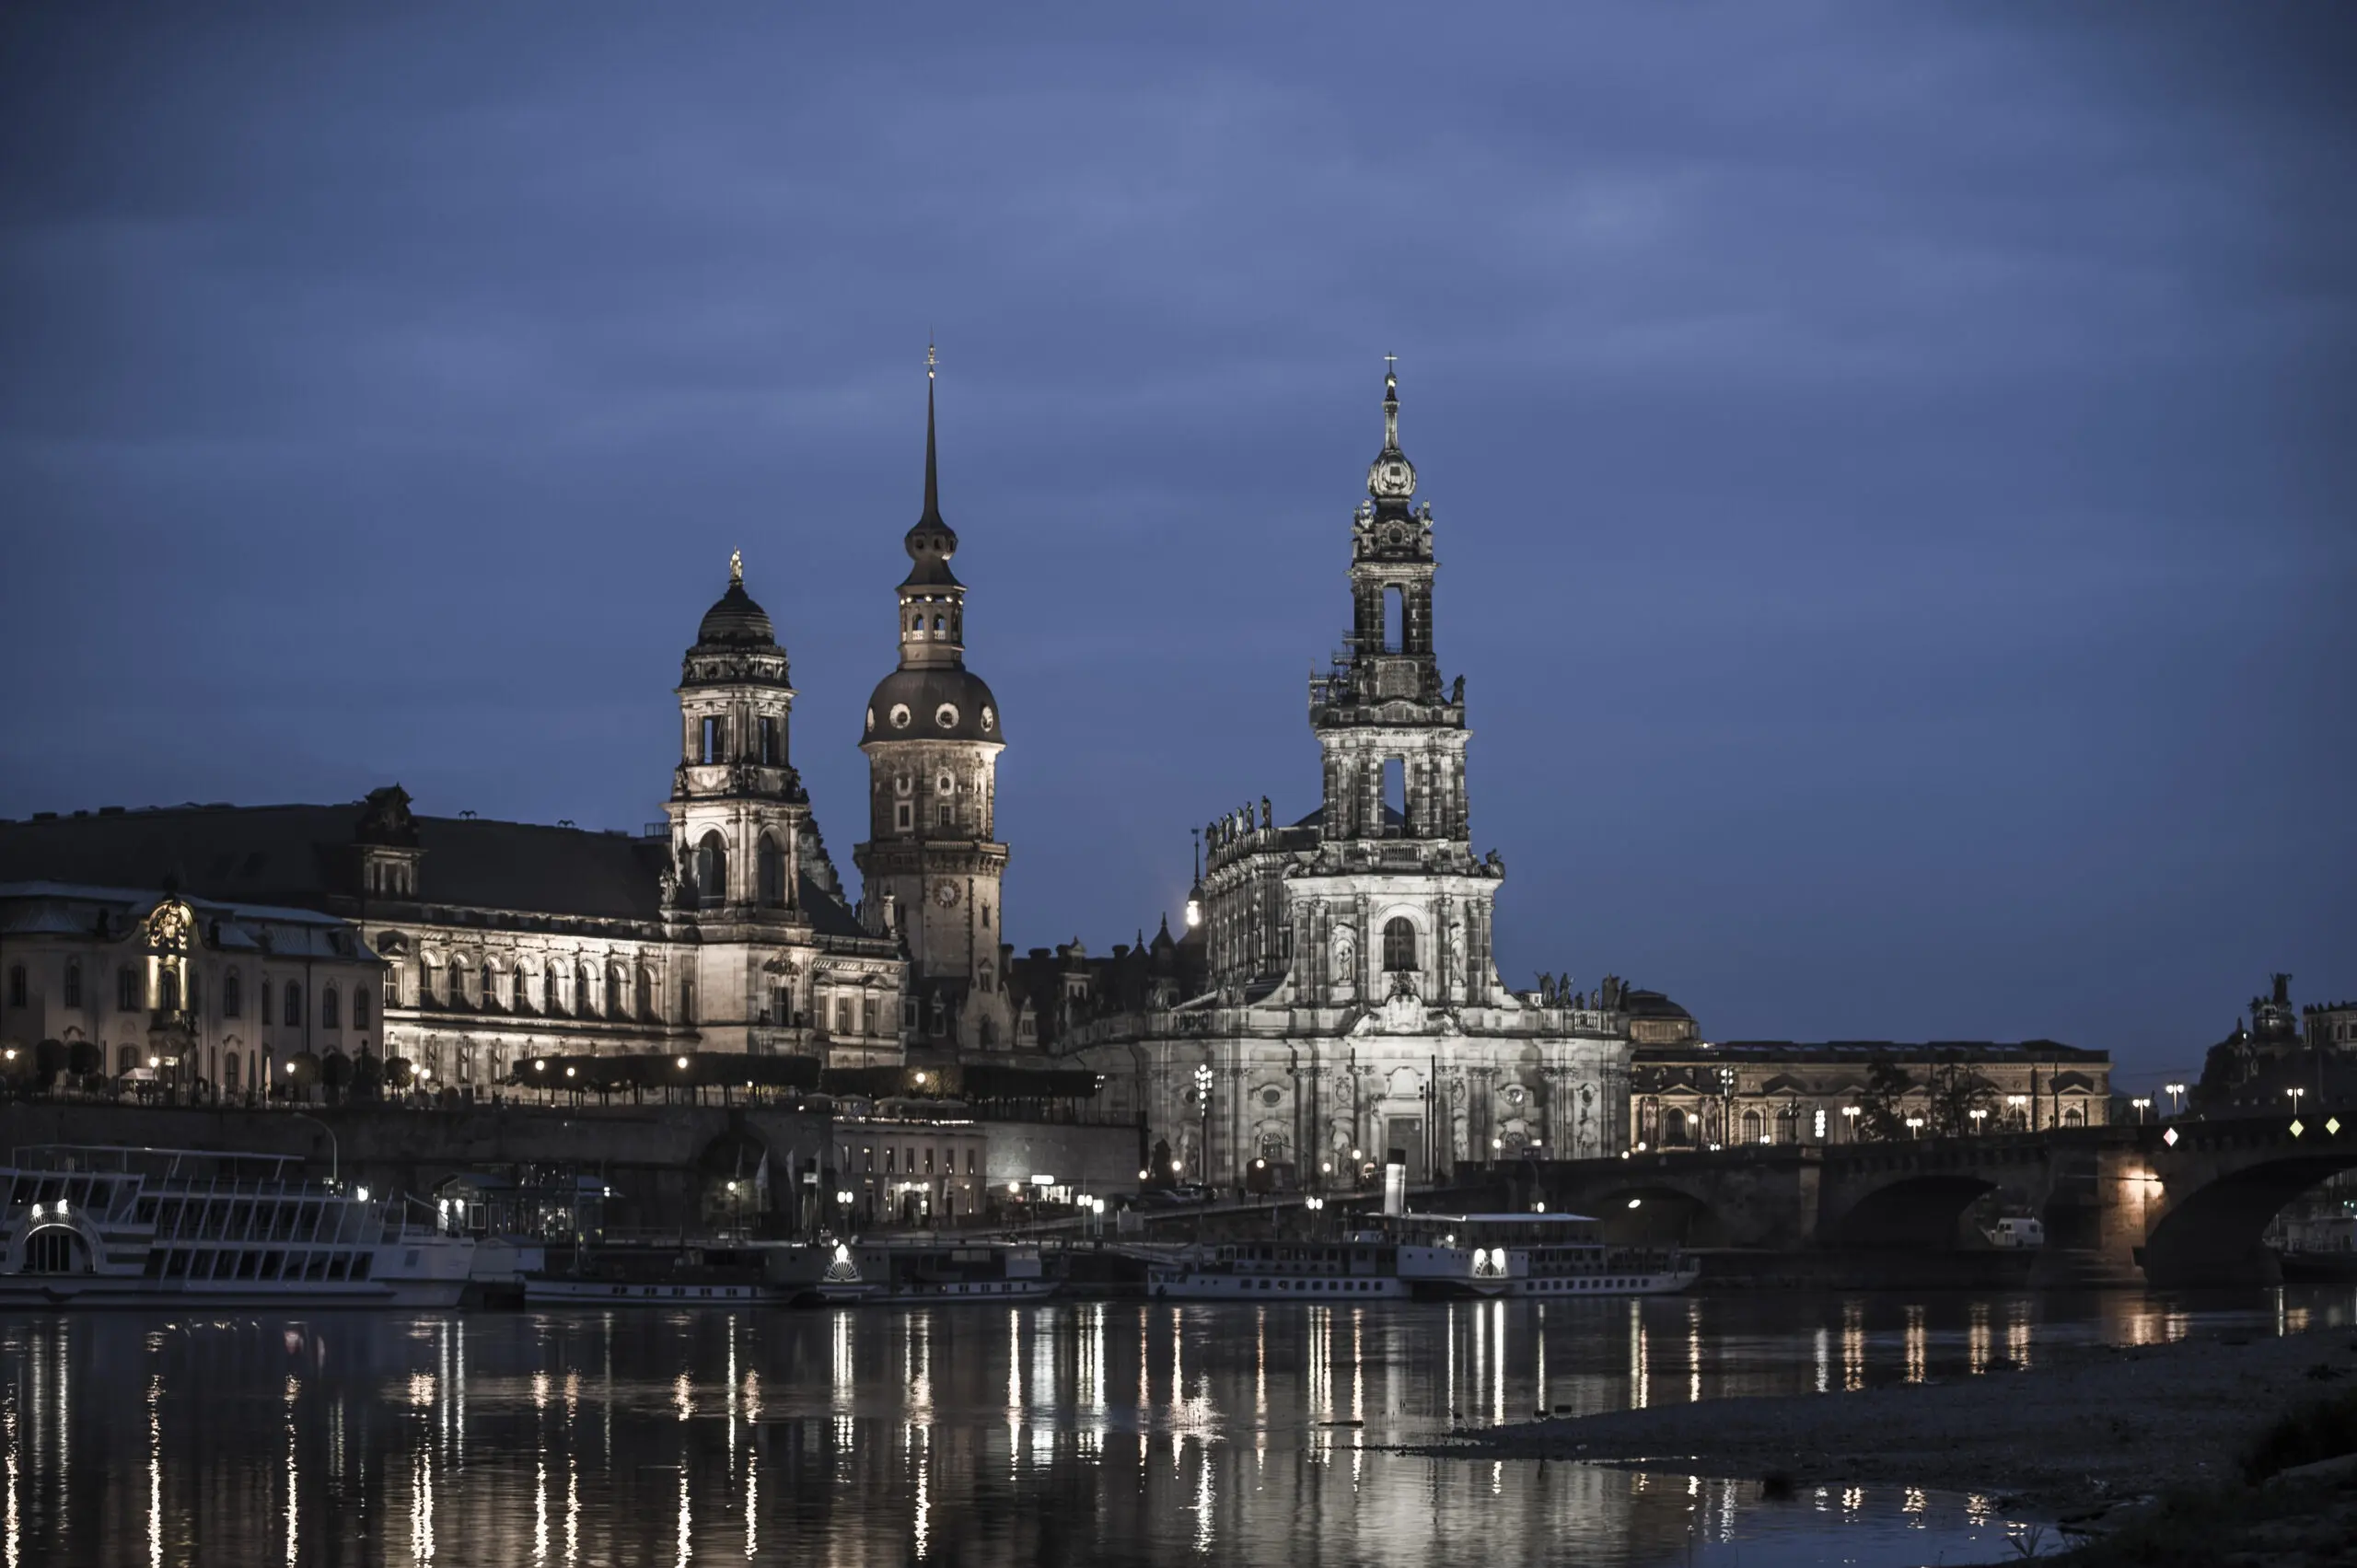 Wandbild (280) Dresden1 präsentiert: Wasser,Architektur,Sehenswürdigkeiten,Wasserspiegelungen